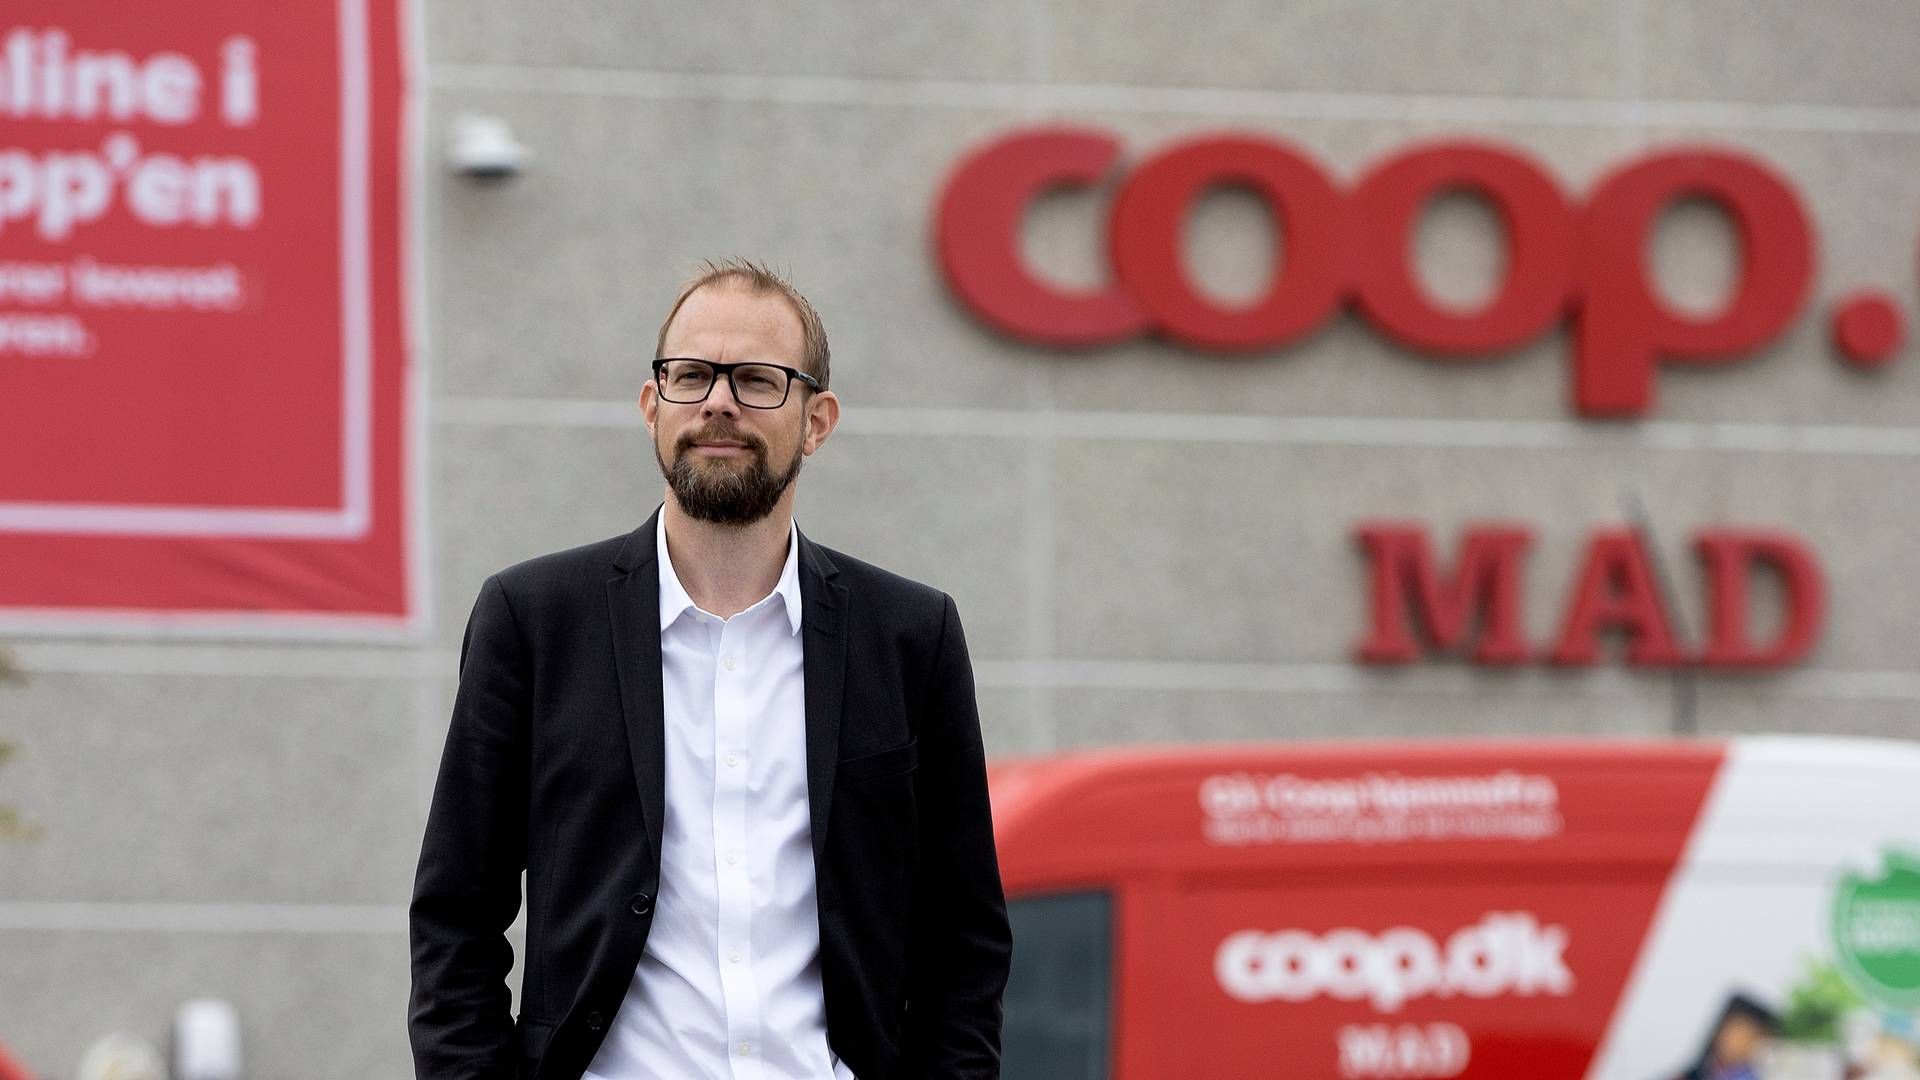 Coops online dagligvareforretning Coop.dk Mad blev lukket ned med koncernens nye strategi. Det samme skal ske med alle Irma-kædens butikker. | Foto: Finn Frandsen